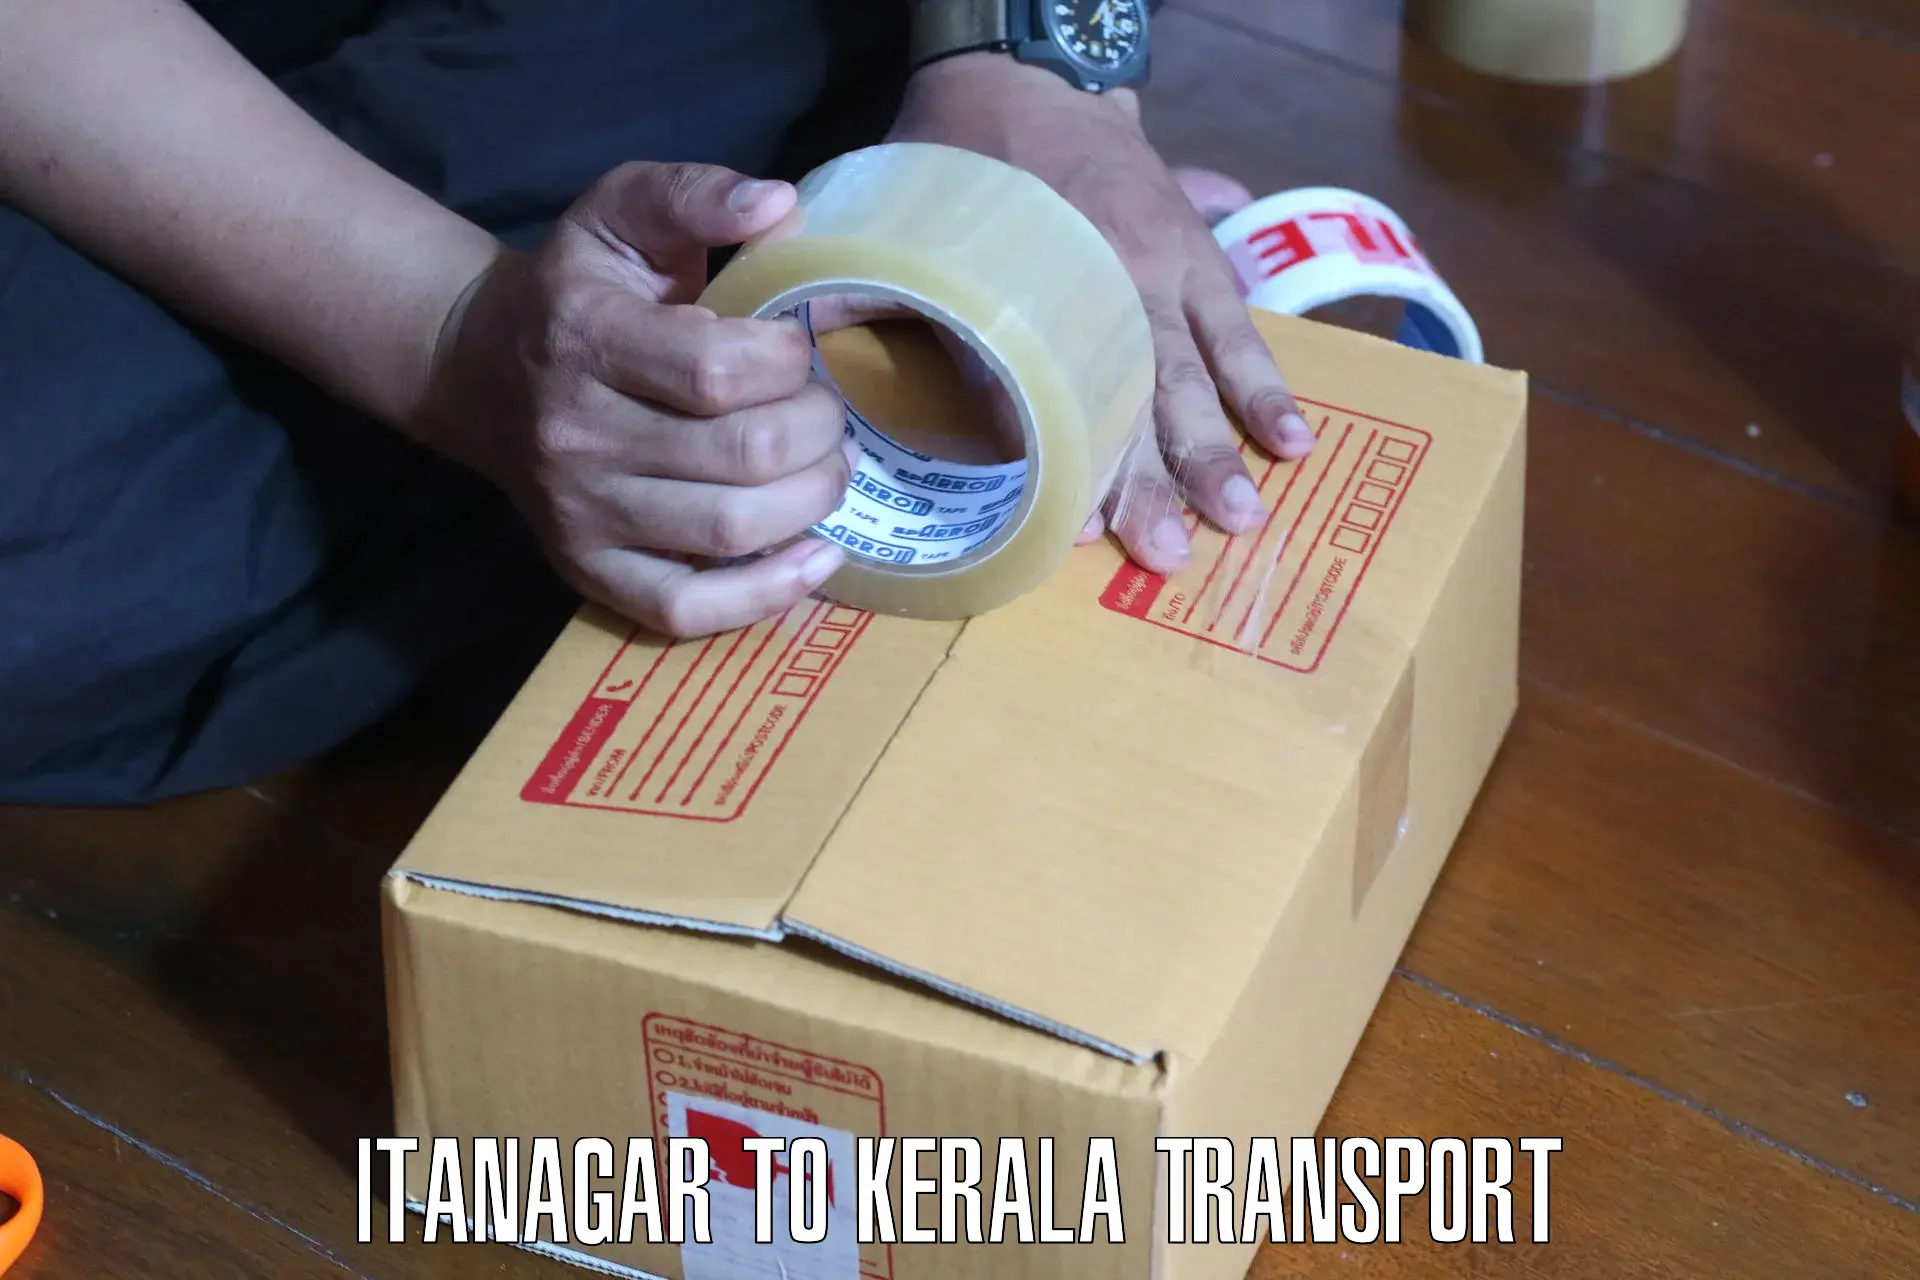 All India transport service Itanagar to Pangodu